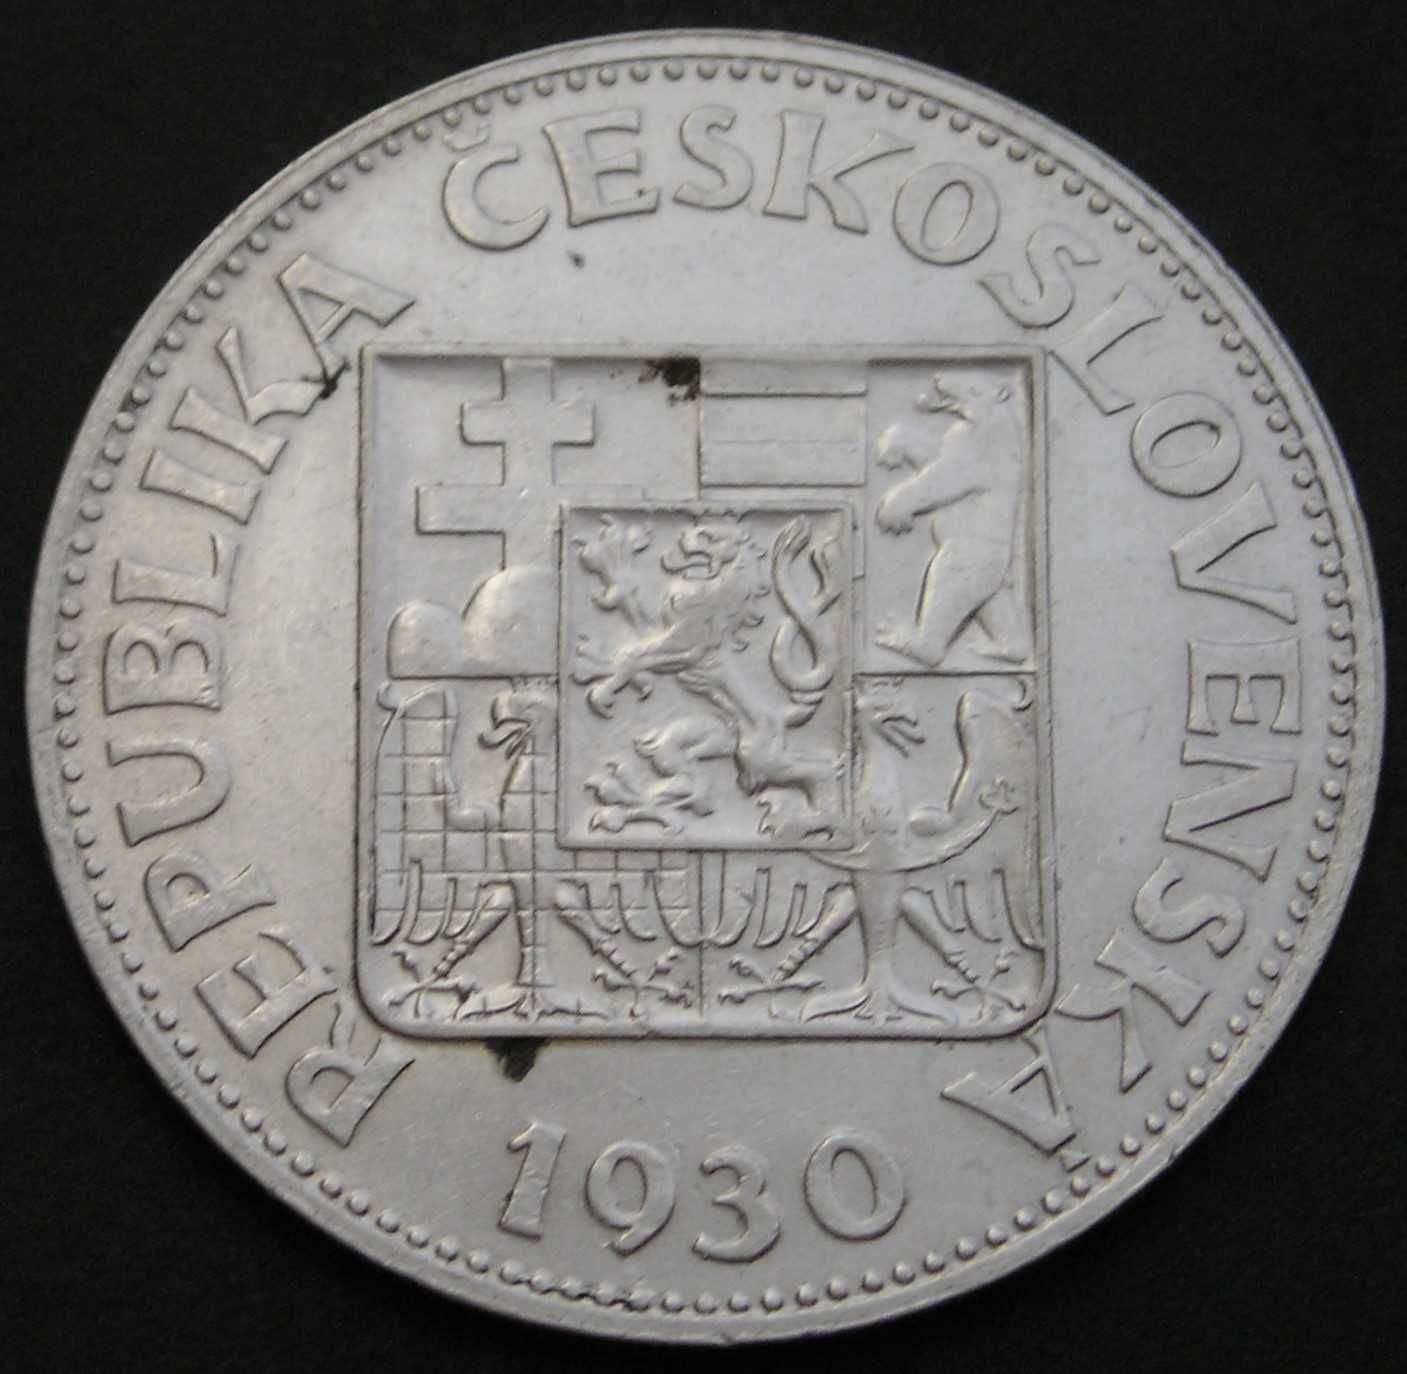 Czechosłowacja 10 koron 1930 - srebro